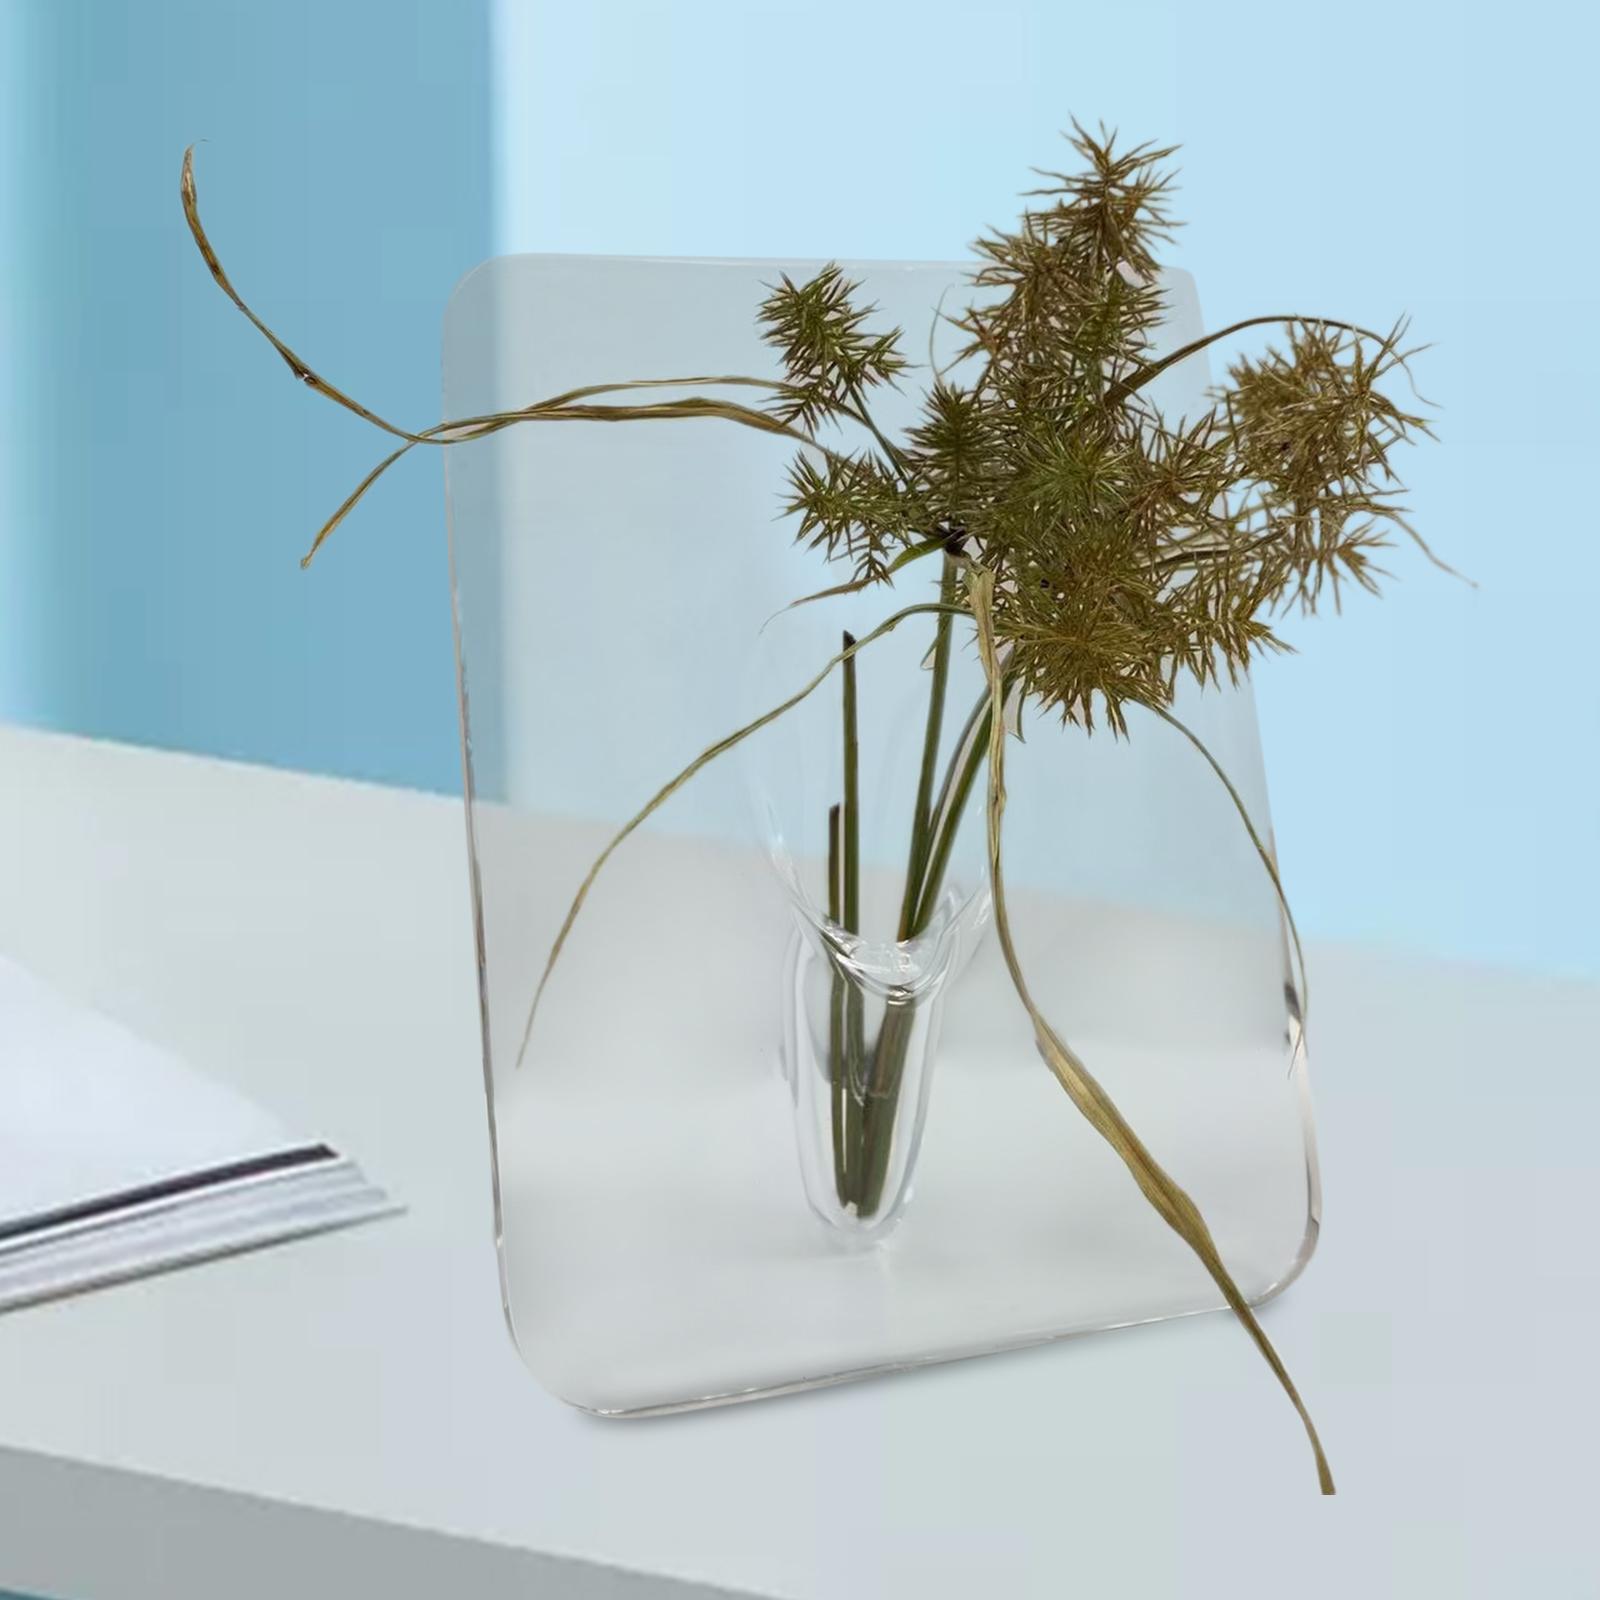 Acrylic Flower Vase Book Shaped Aesthetic for Wedding Flower Shop Restaurant